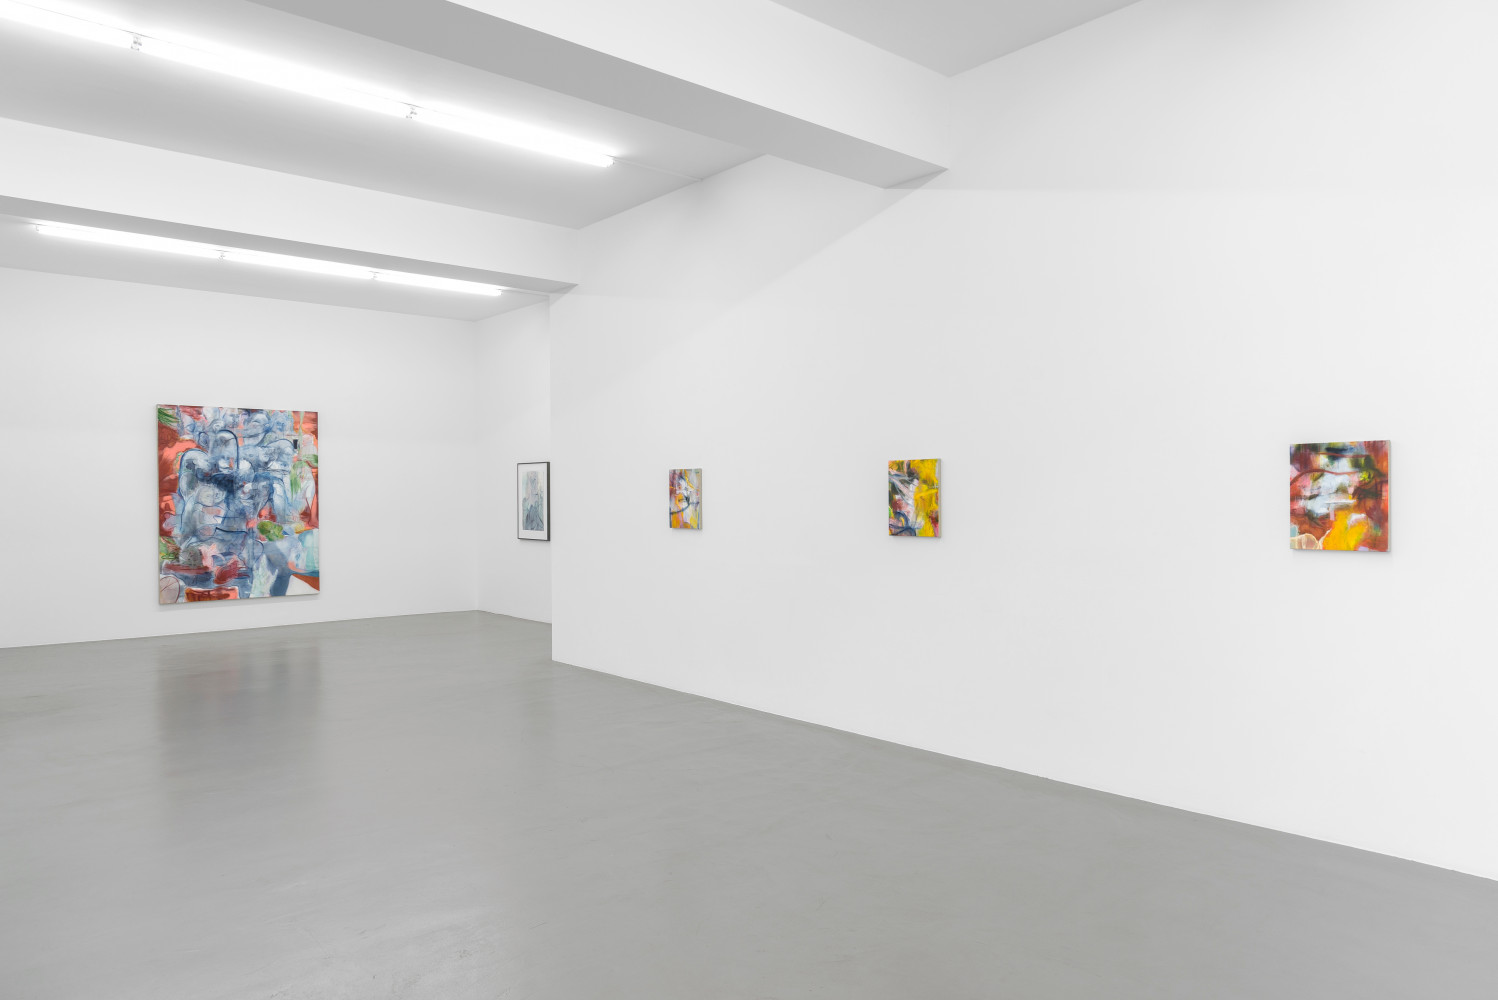 Nigel Cooke, ‘Nigel Cooke – Spring in Fialta’, Installationsansicht, Buchmann Galerie, 2019